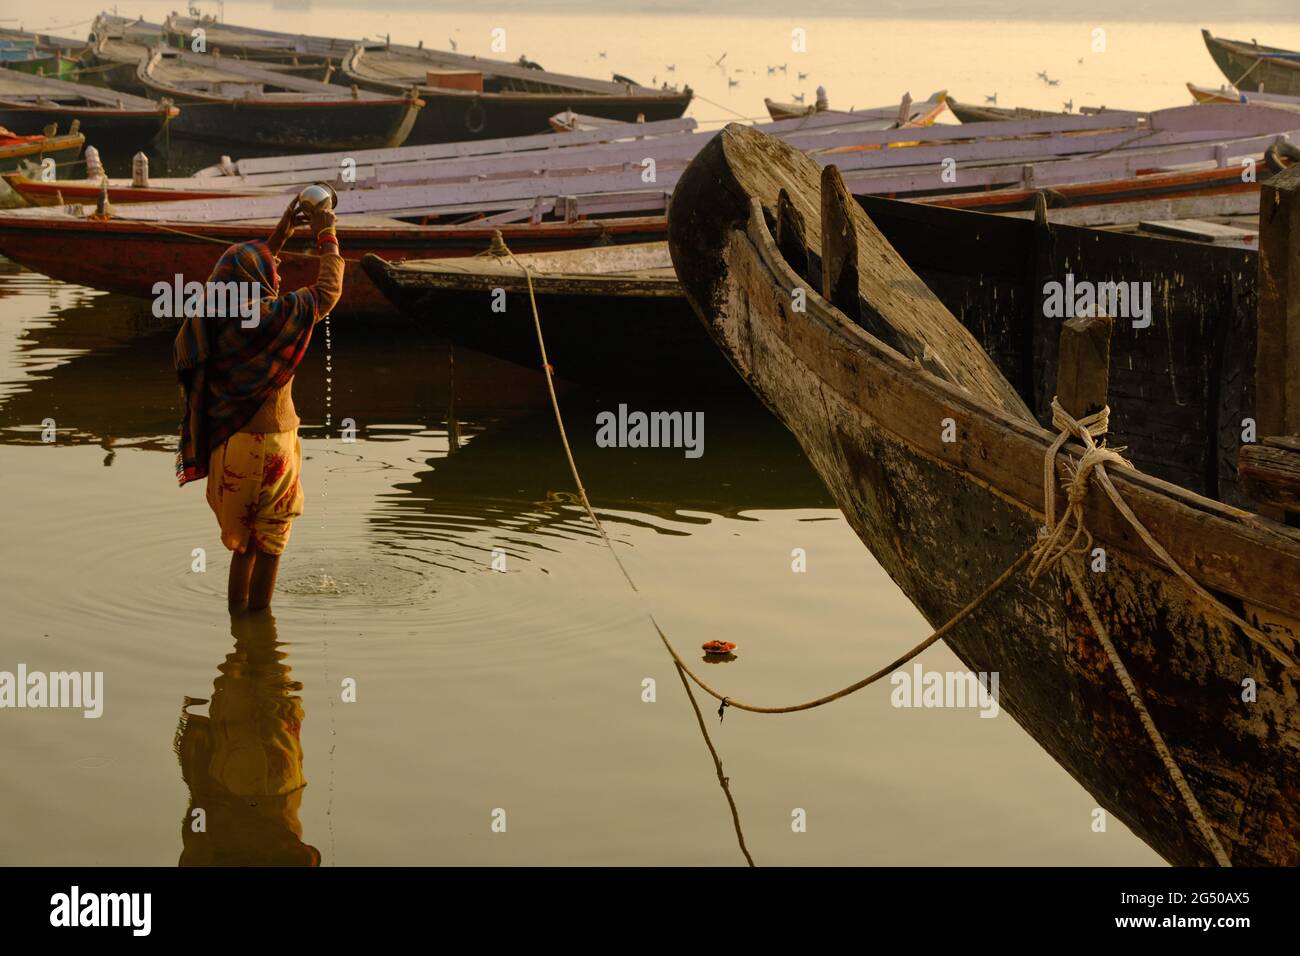 02. FEBRUAR 2021, VARANASI, UTTAR PRADESH, INDIEN - nicht identifizierte Frau, die im Fluss Ganga ein rituelles Bad nimmt und ein Ritual (Puja) im Fluss macht. Stockfoto